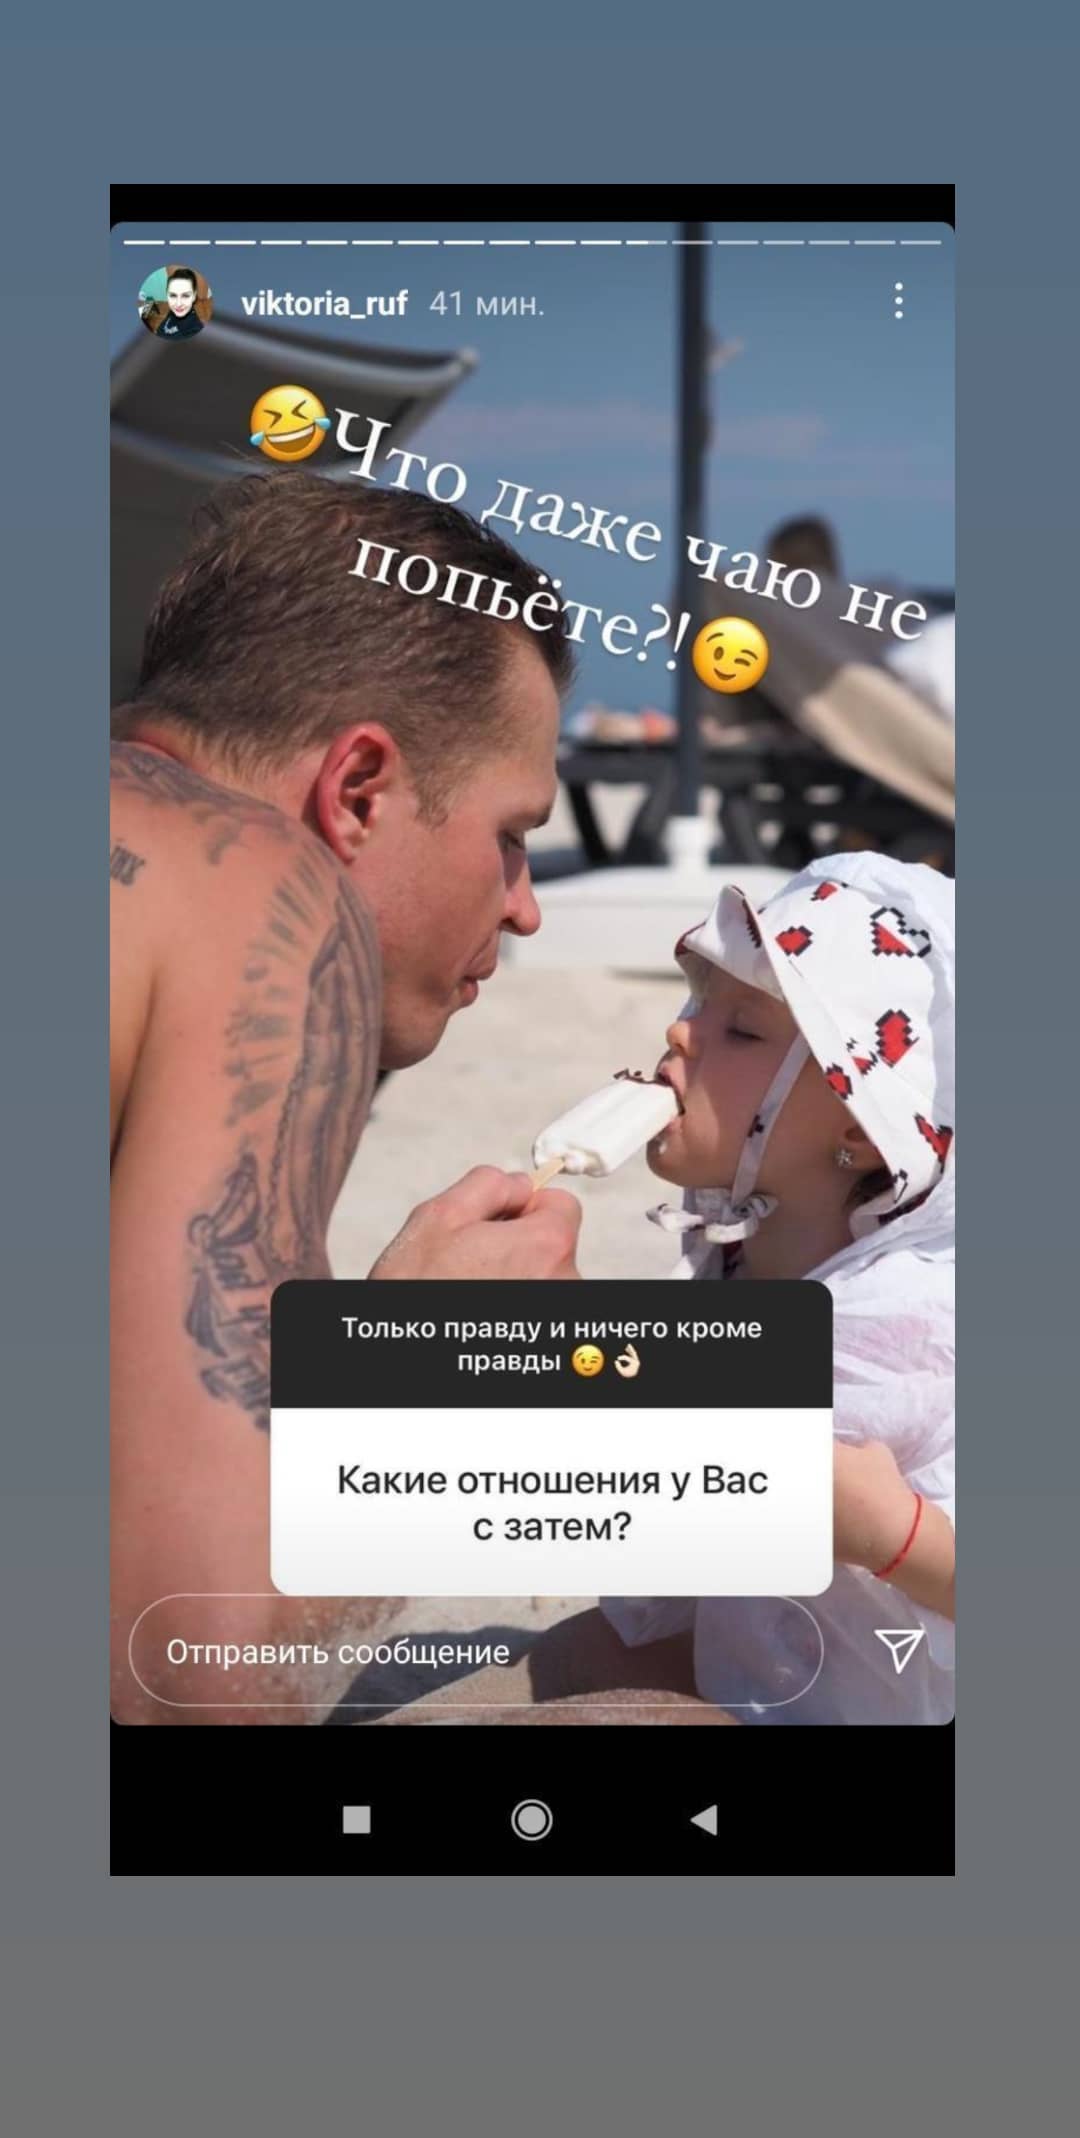 "Даже чаю не попьете?": теща Дмитрия Тарасова призналась, что футболист не хочет с ней родниться